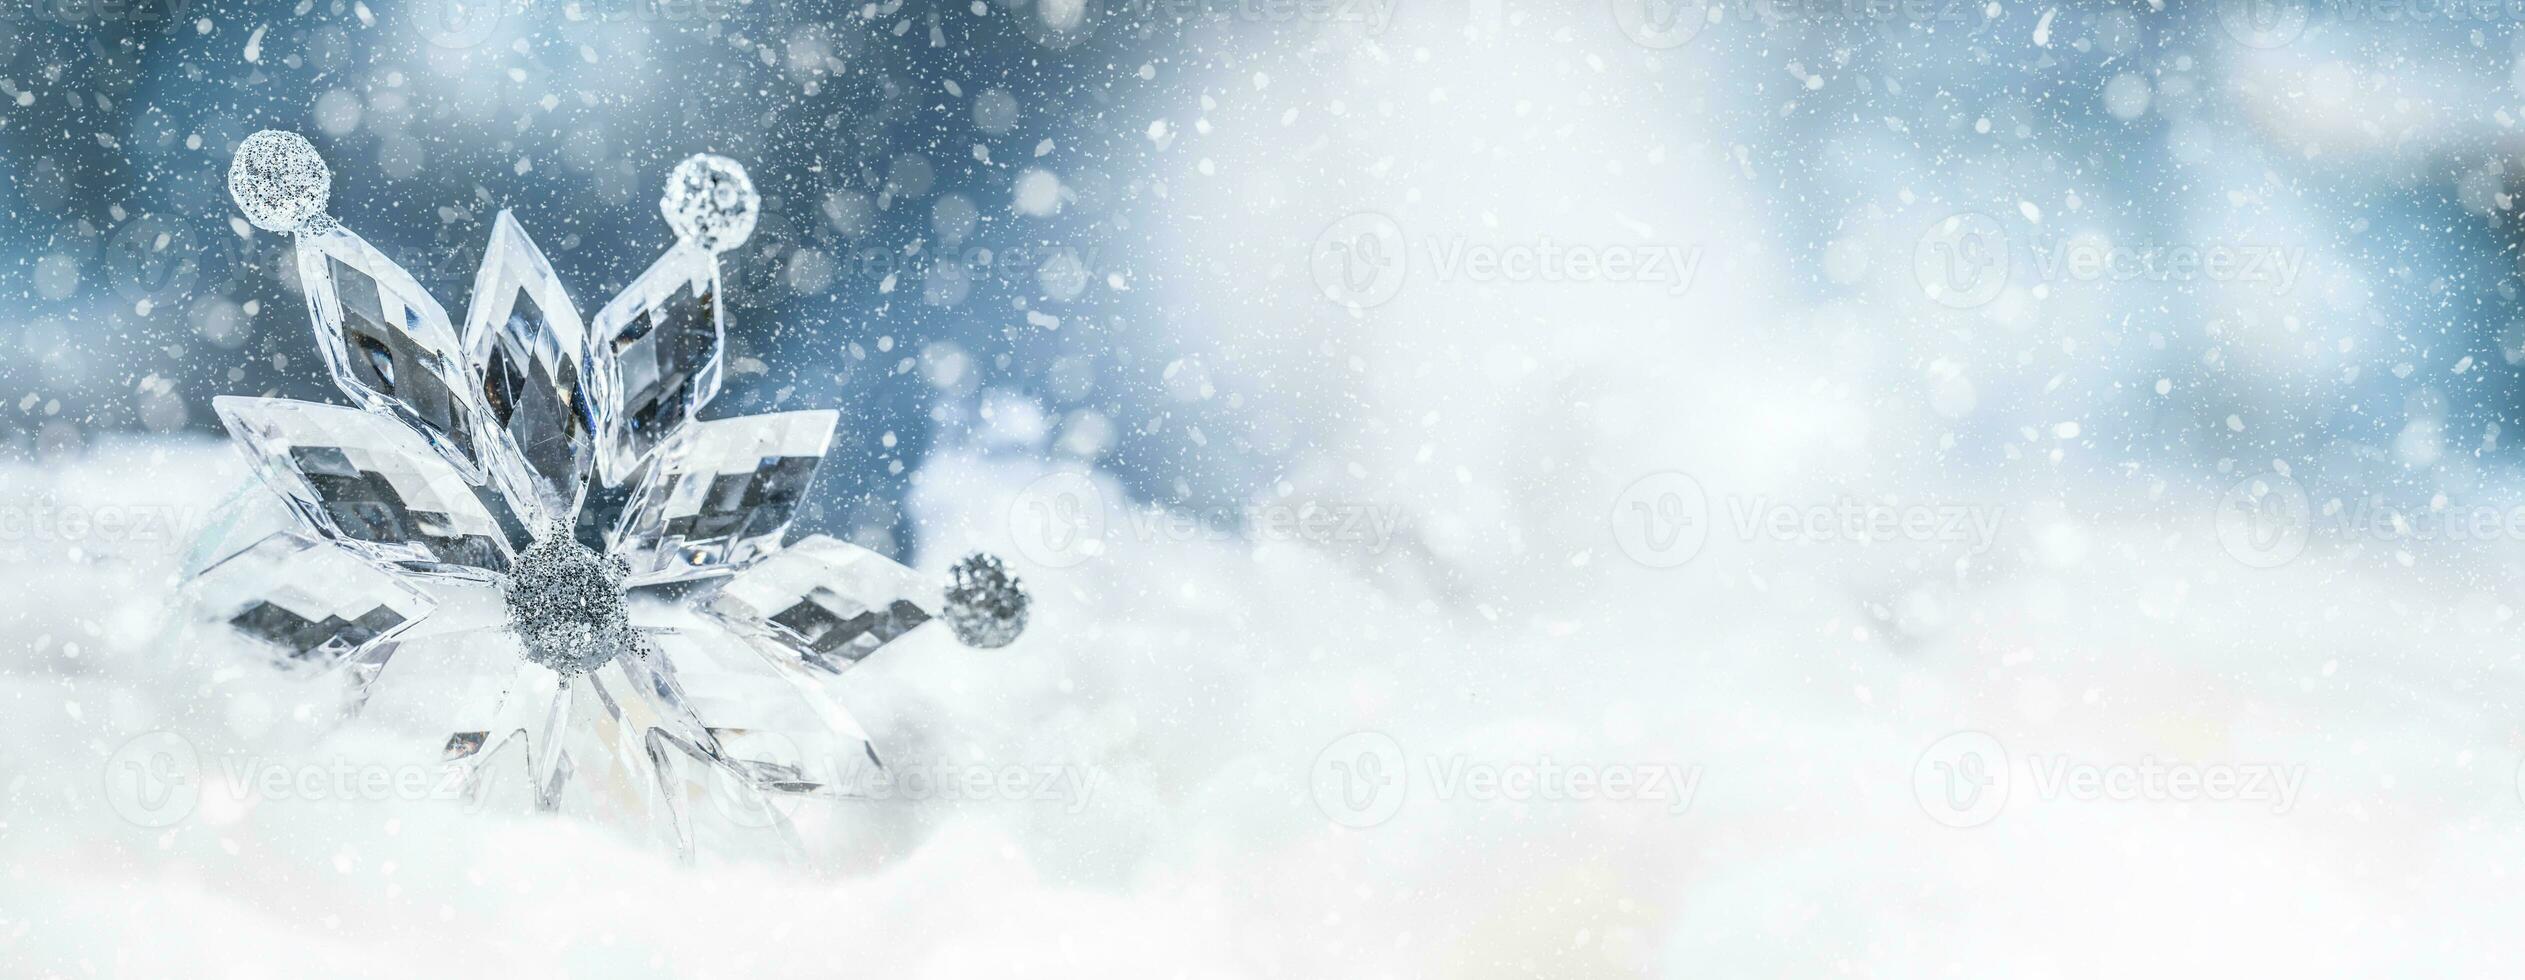 hielo Navidad estrella en nieve. alegre Navidad concepto foto